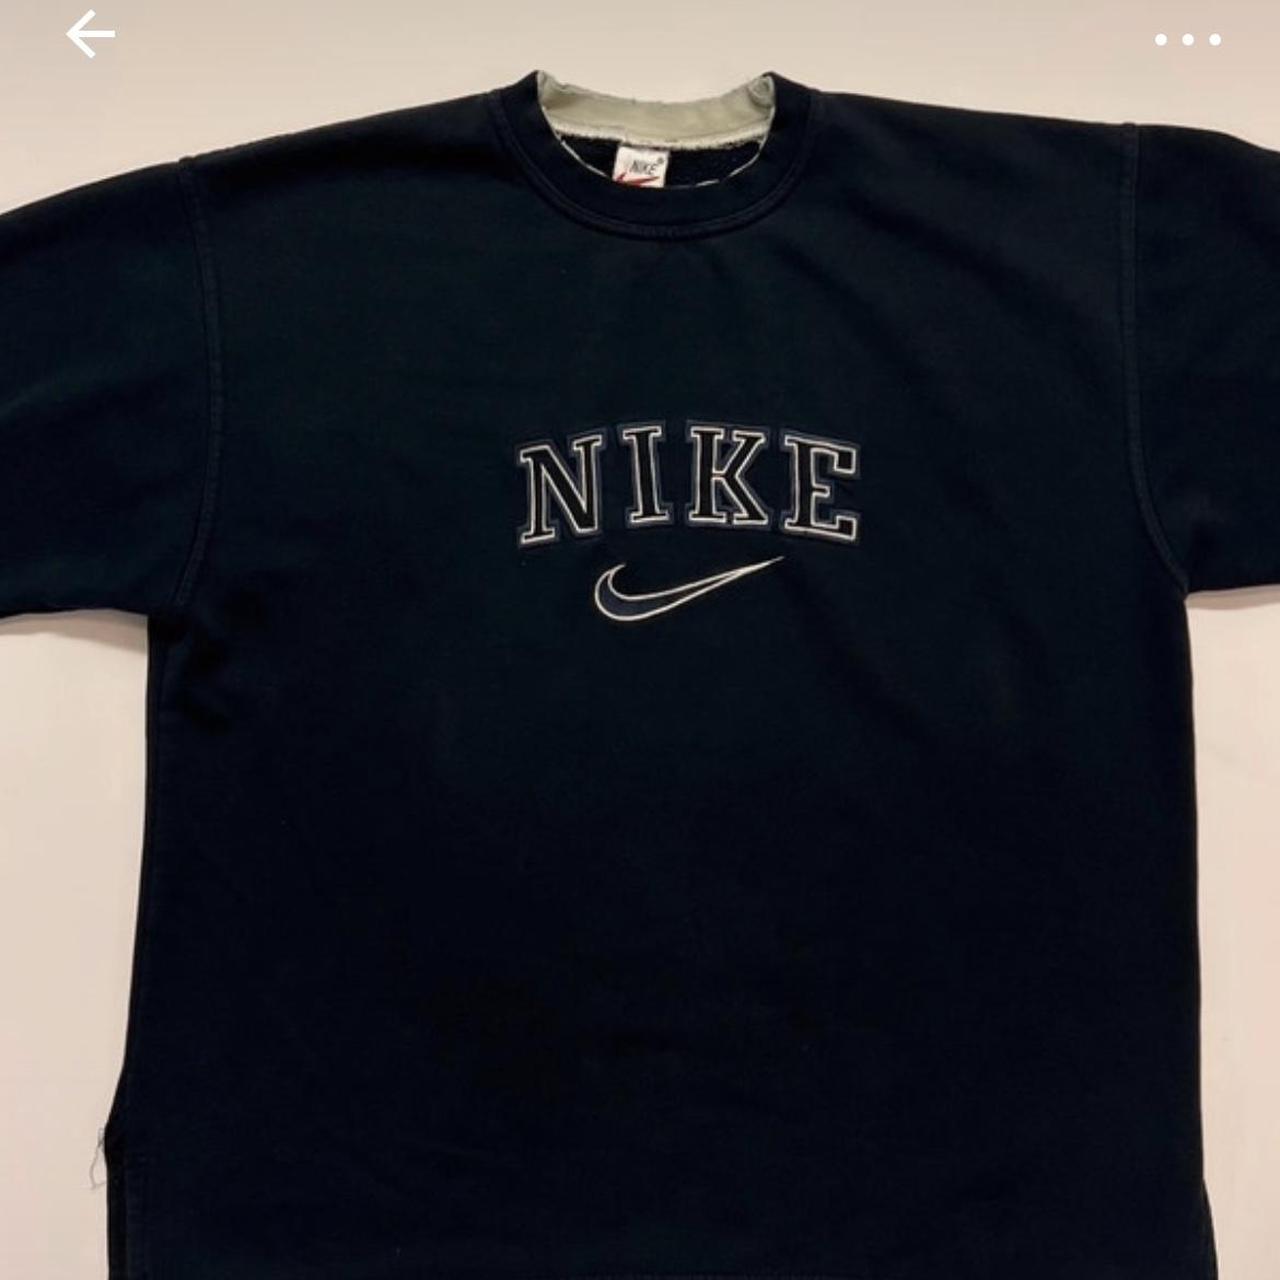 LOOKING FOR navy vintage Nike spellout sweatshirt -... - Depop